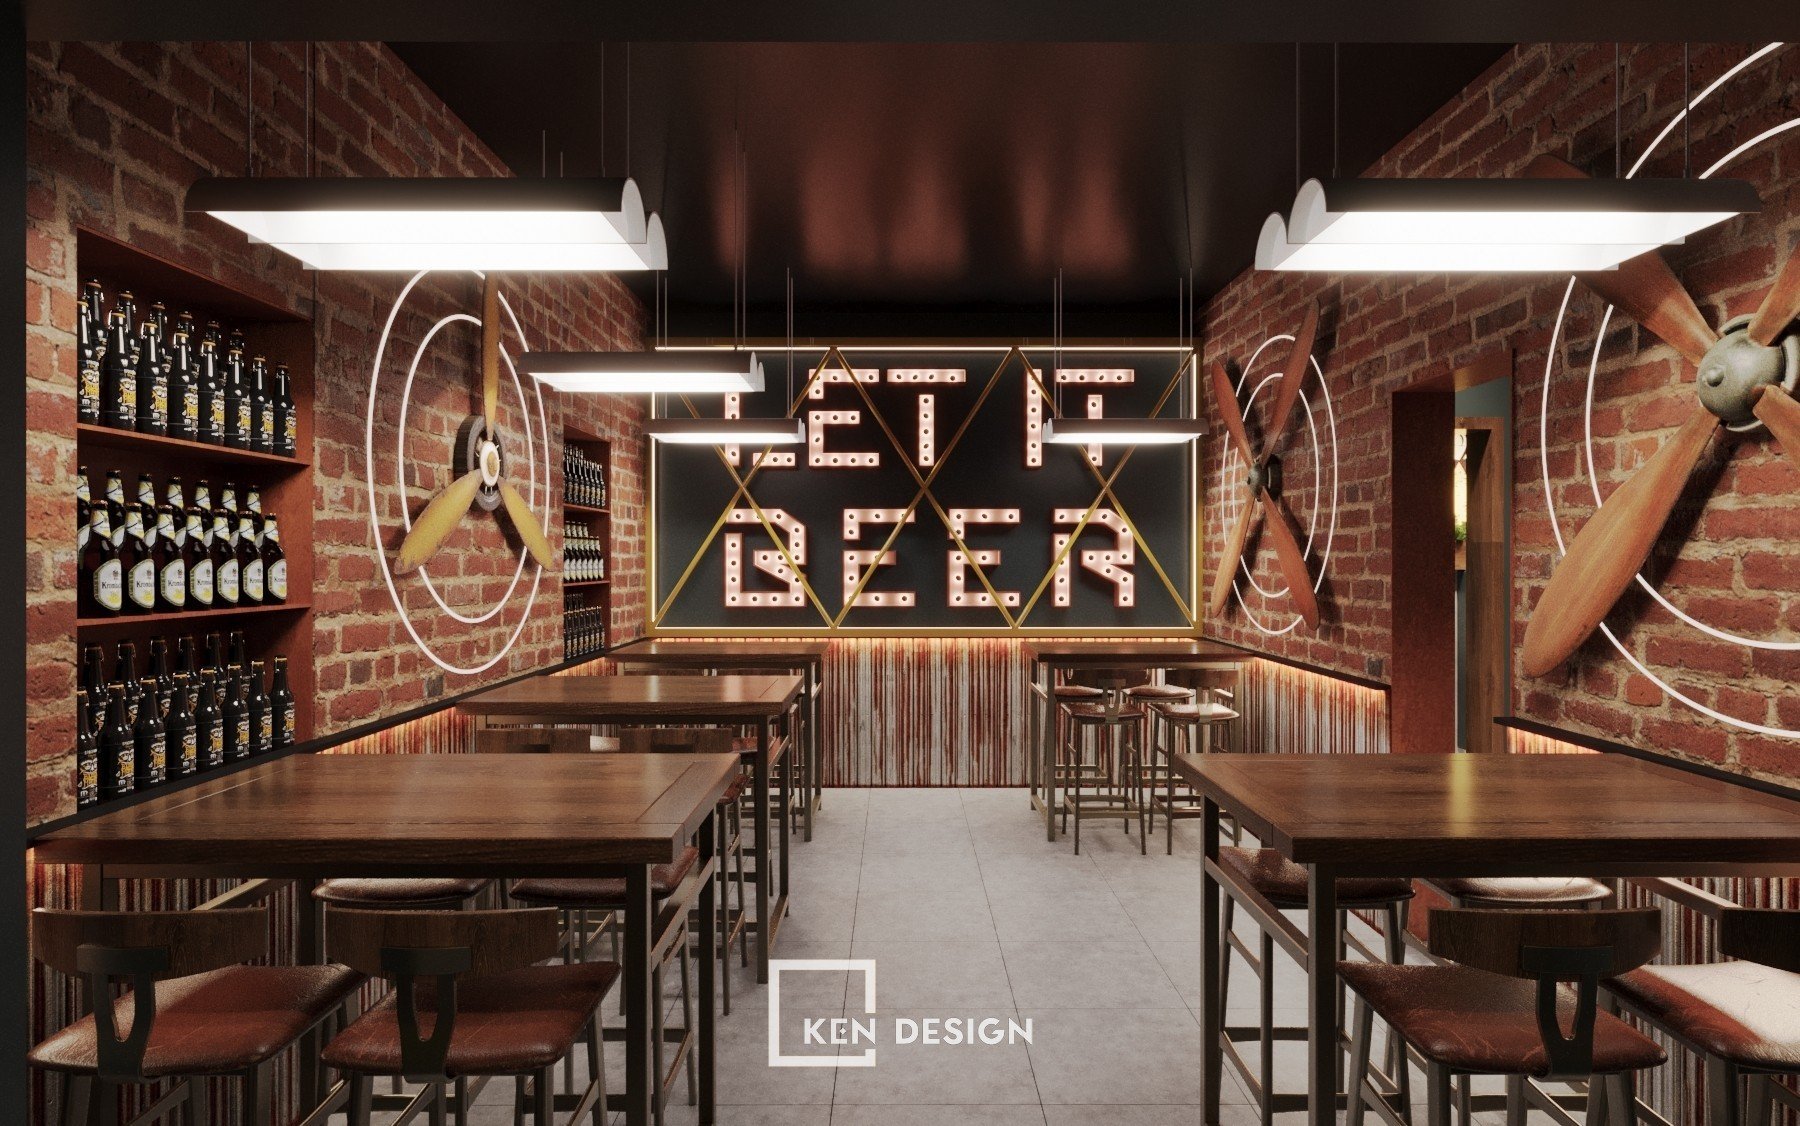 thiet ke nha hang bia 18 - Thiết kế nhà hàng bia độc lạ, phóng khoáng tại Hà Nội